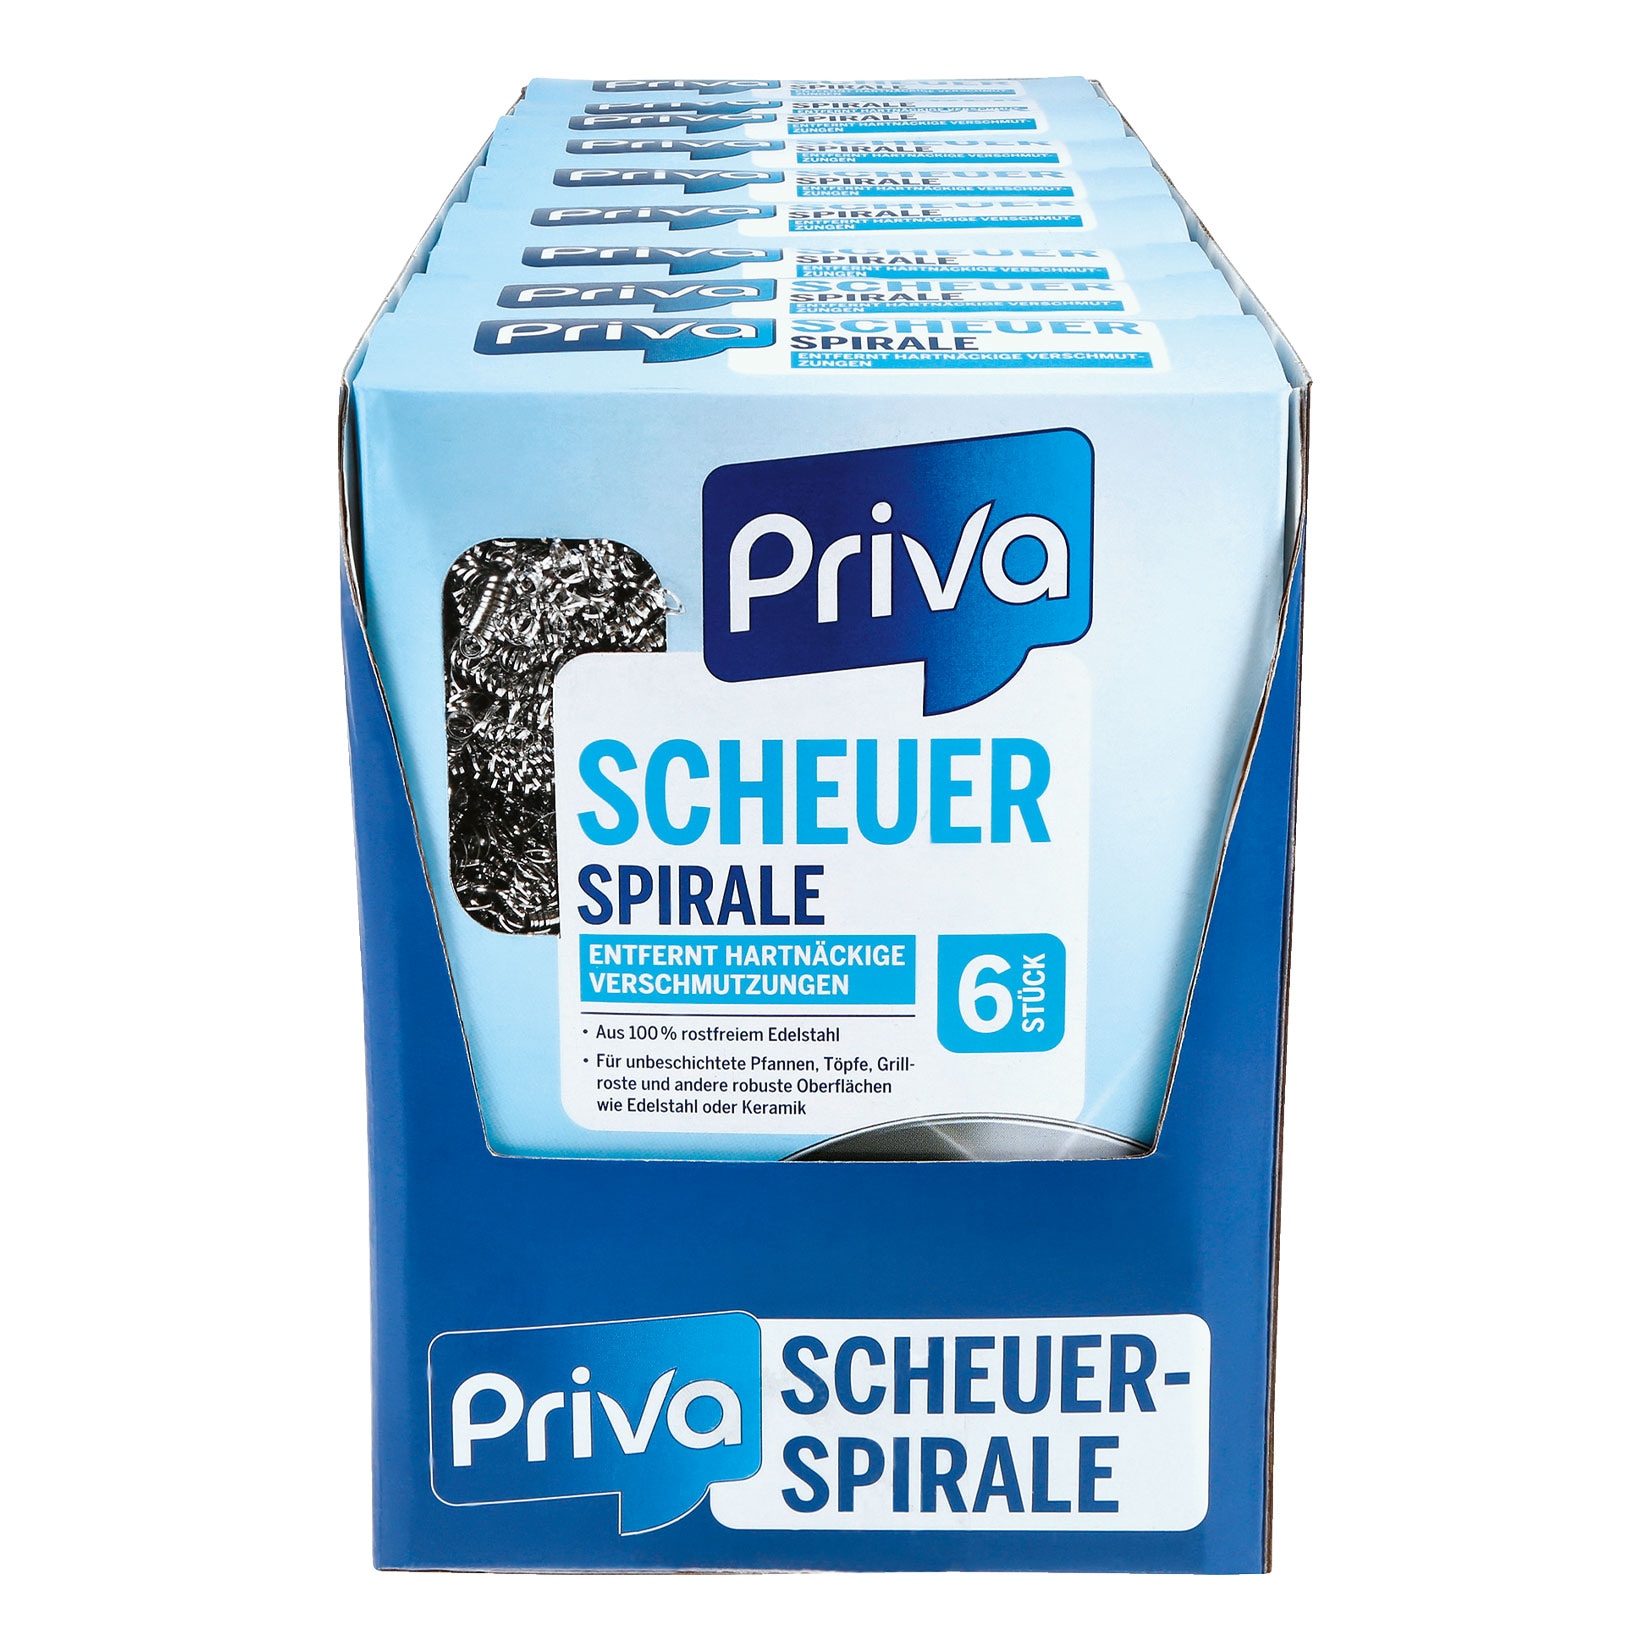 Priva Scheuerspirale 6 Stück , 9er Pack